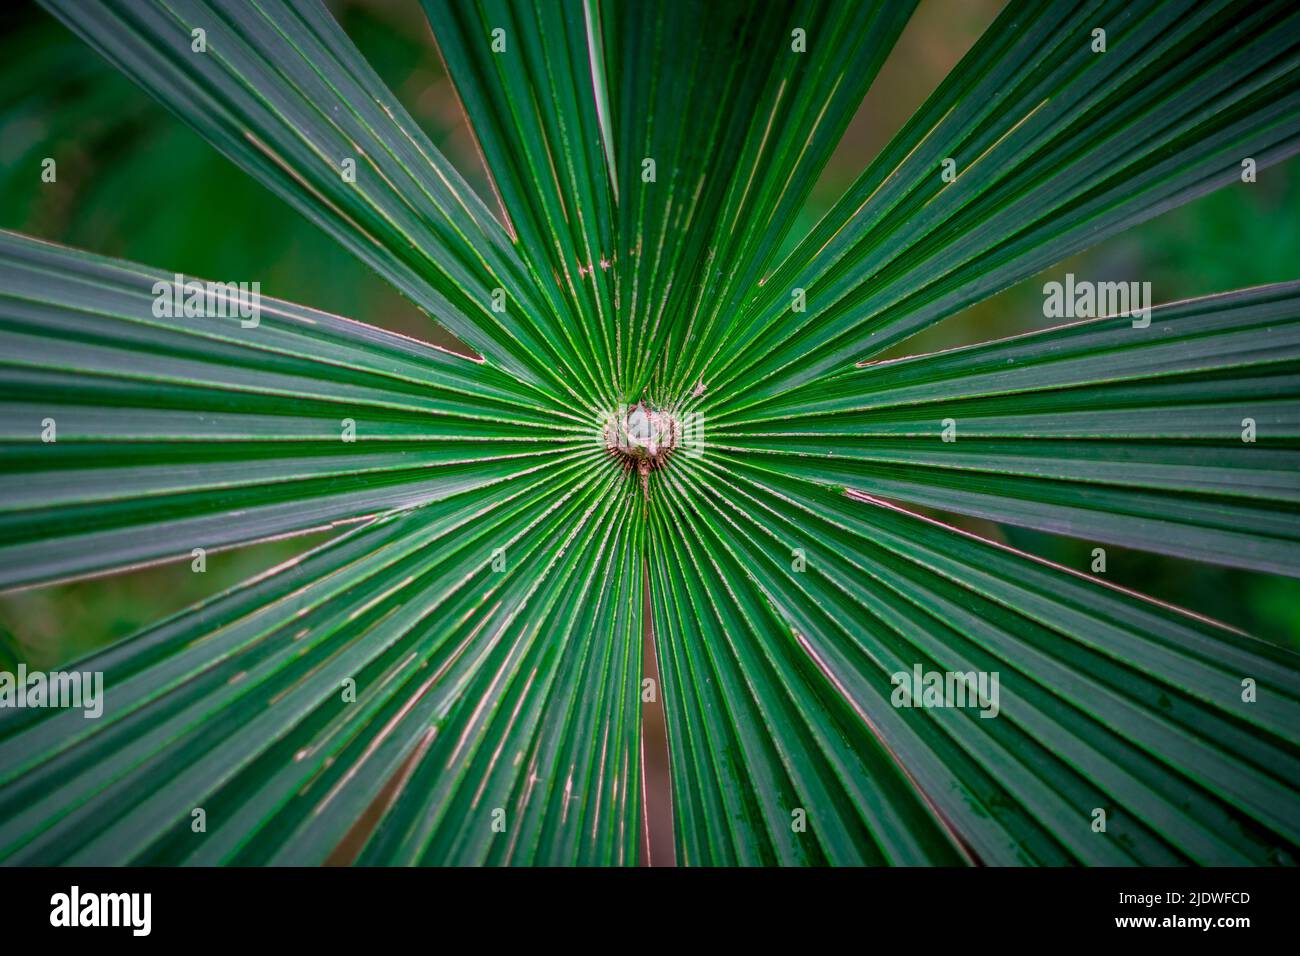 Leuchtend grüne Palmenblätter breiten sich aus. Lateinischer Name: Cryosophila warscewiczii Stockfoto